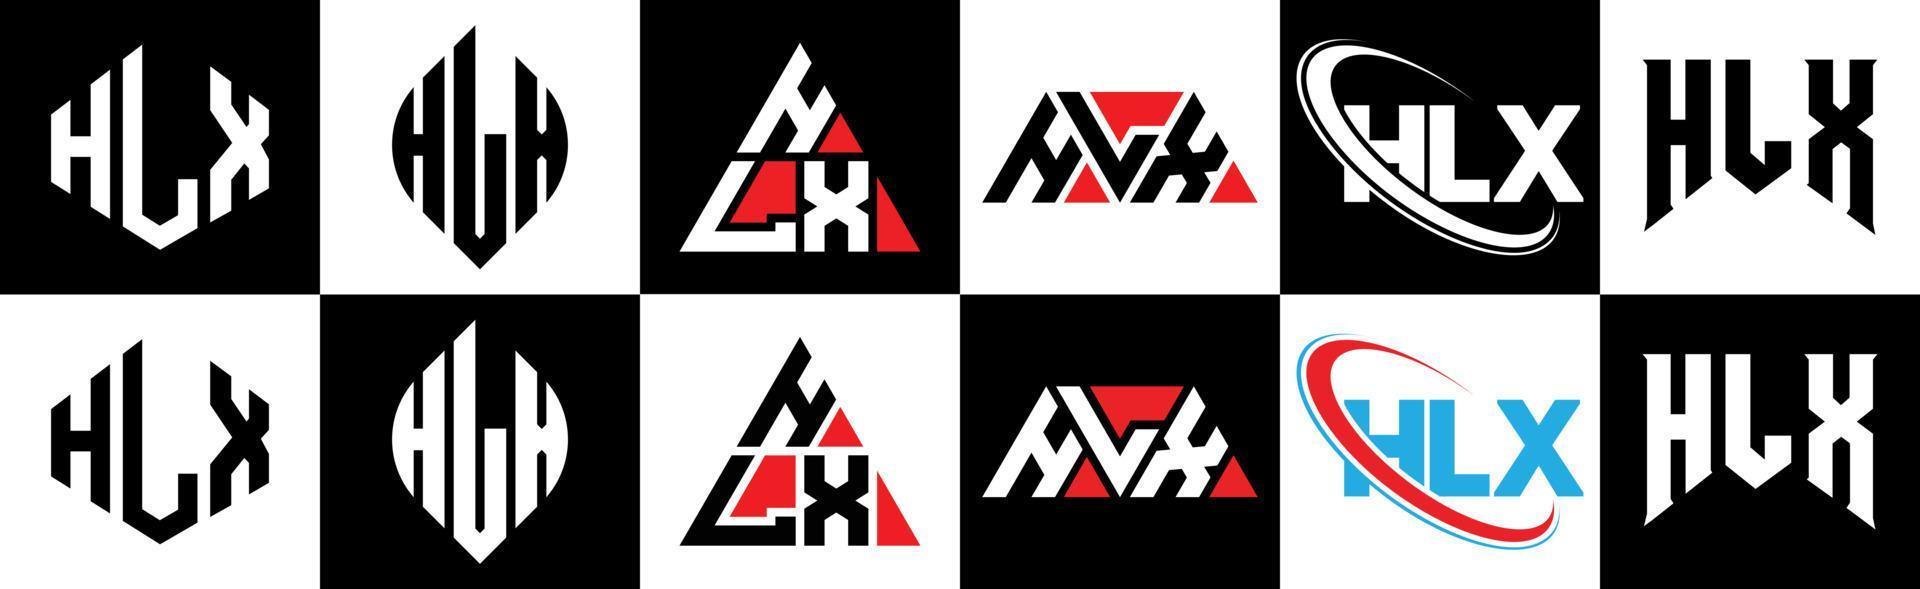 création de logo de lettre hlx en six styles. polygone hlx, cercle, triangle, hexagone, style plat et simple avec logo de lettre de variation de couleur noir et blanc dans un plan de travail. logo minimaliste et classique hlx vecteur